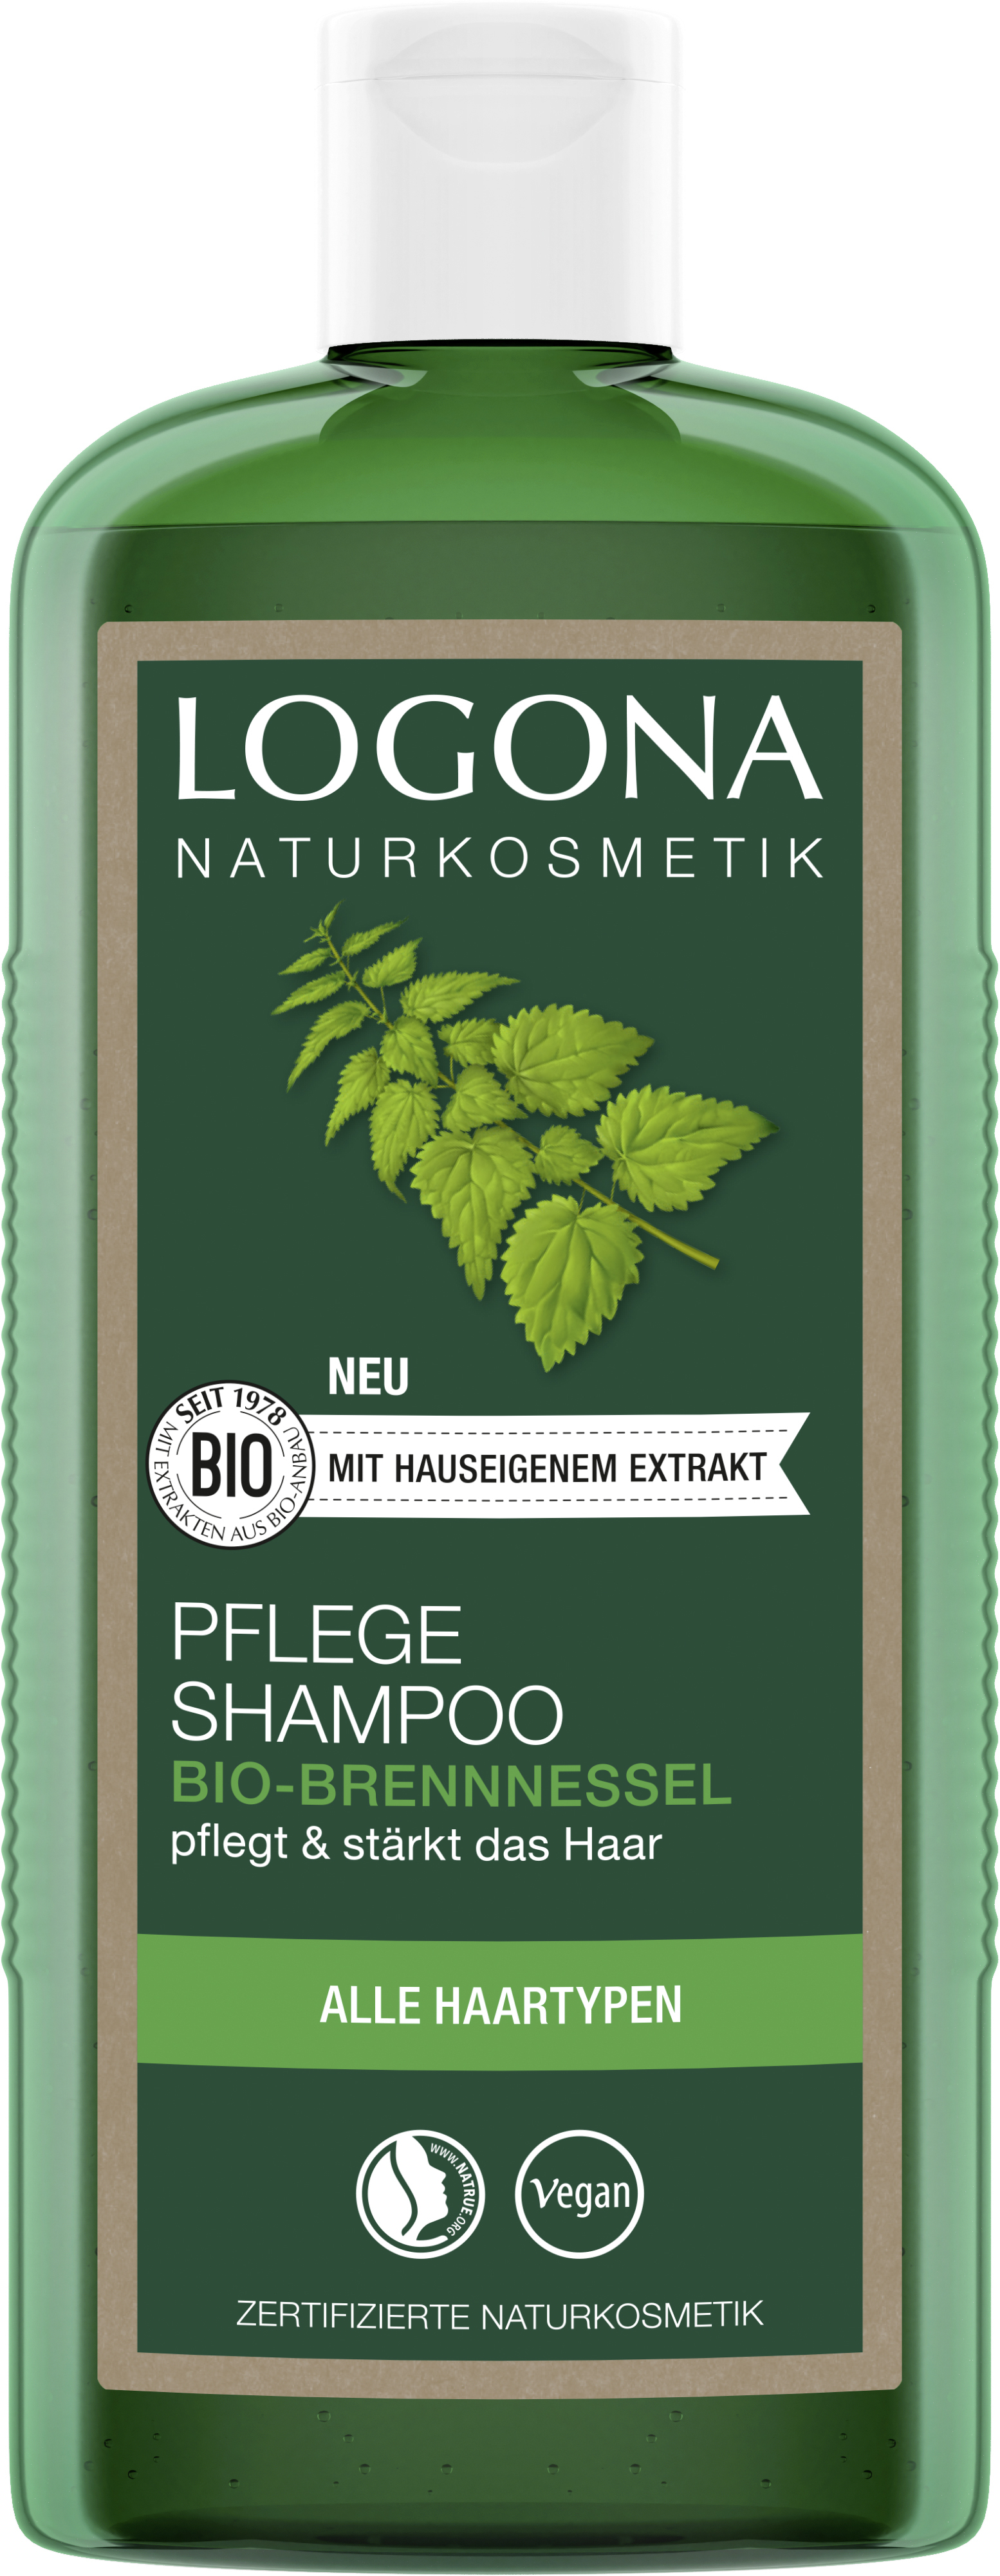 Bio-Brennnessel | Naturkosmetik Shampoo LOGONA Pflege